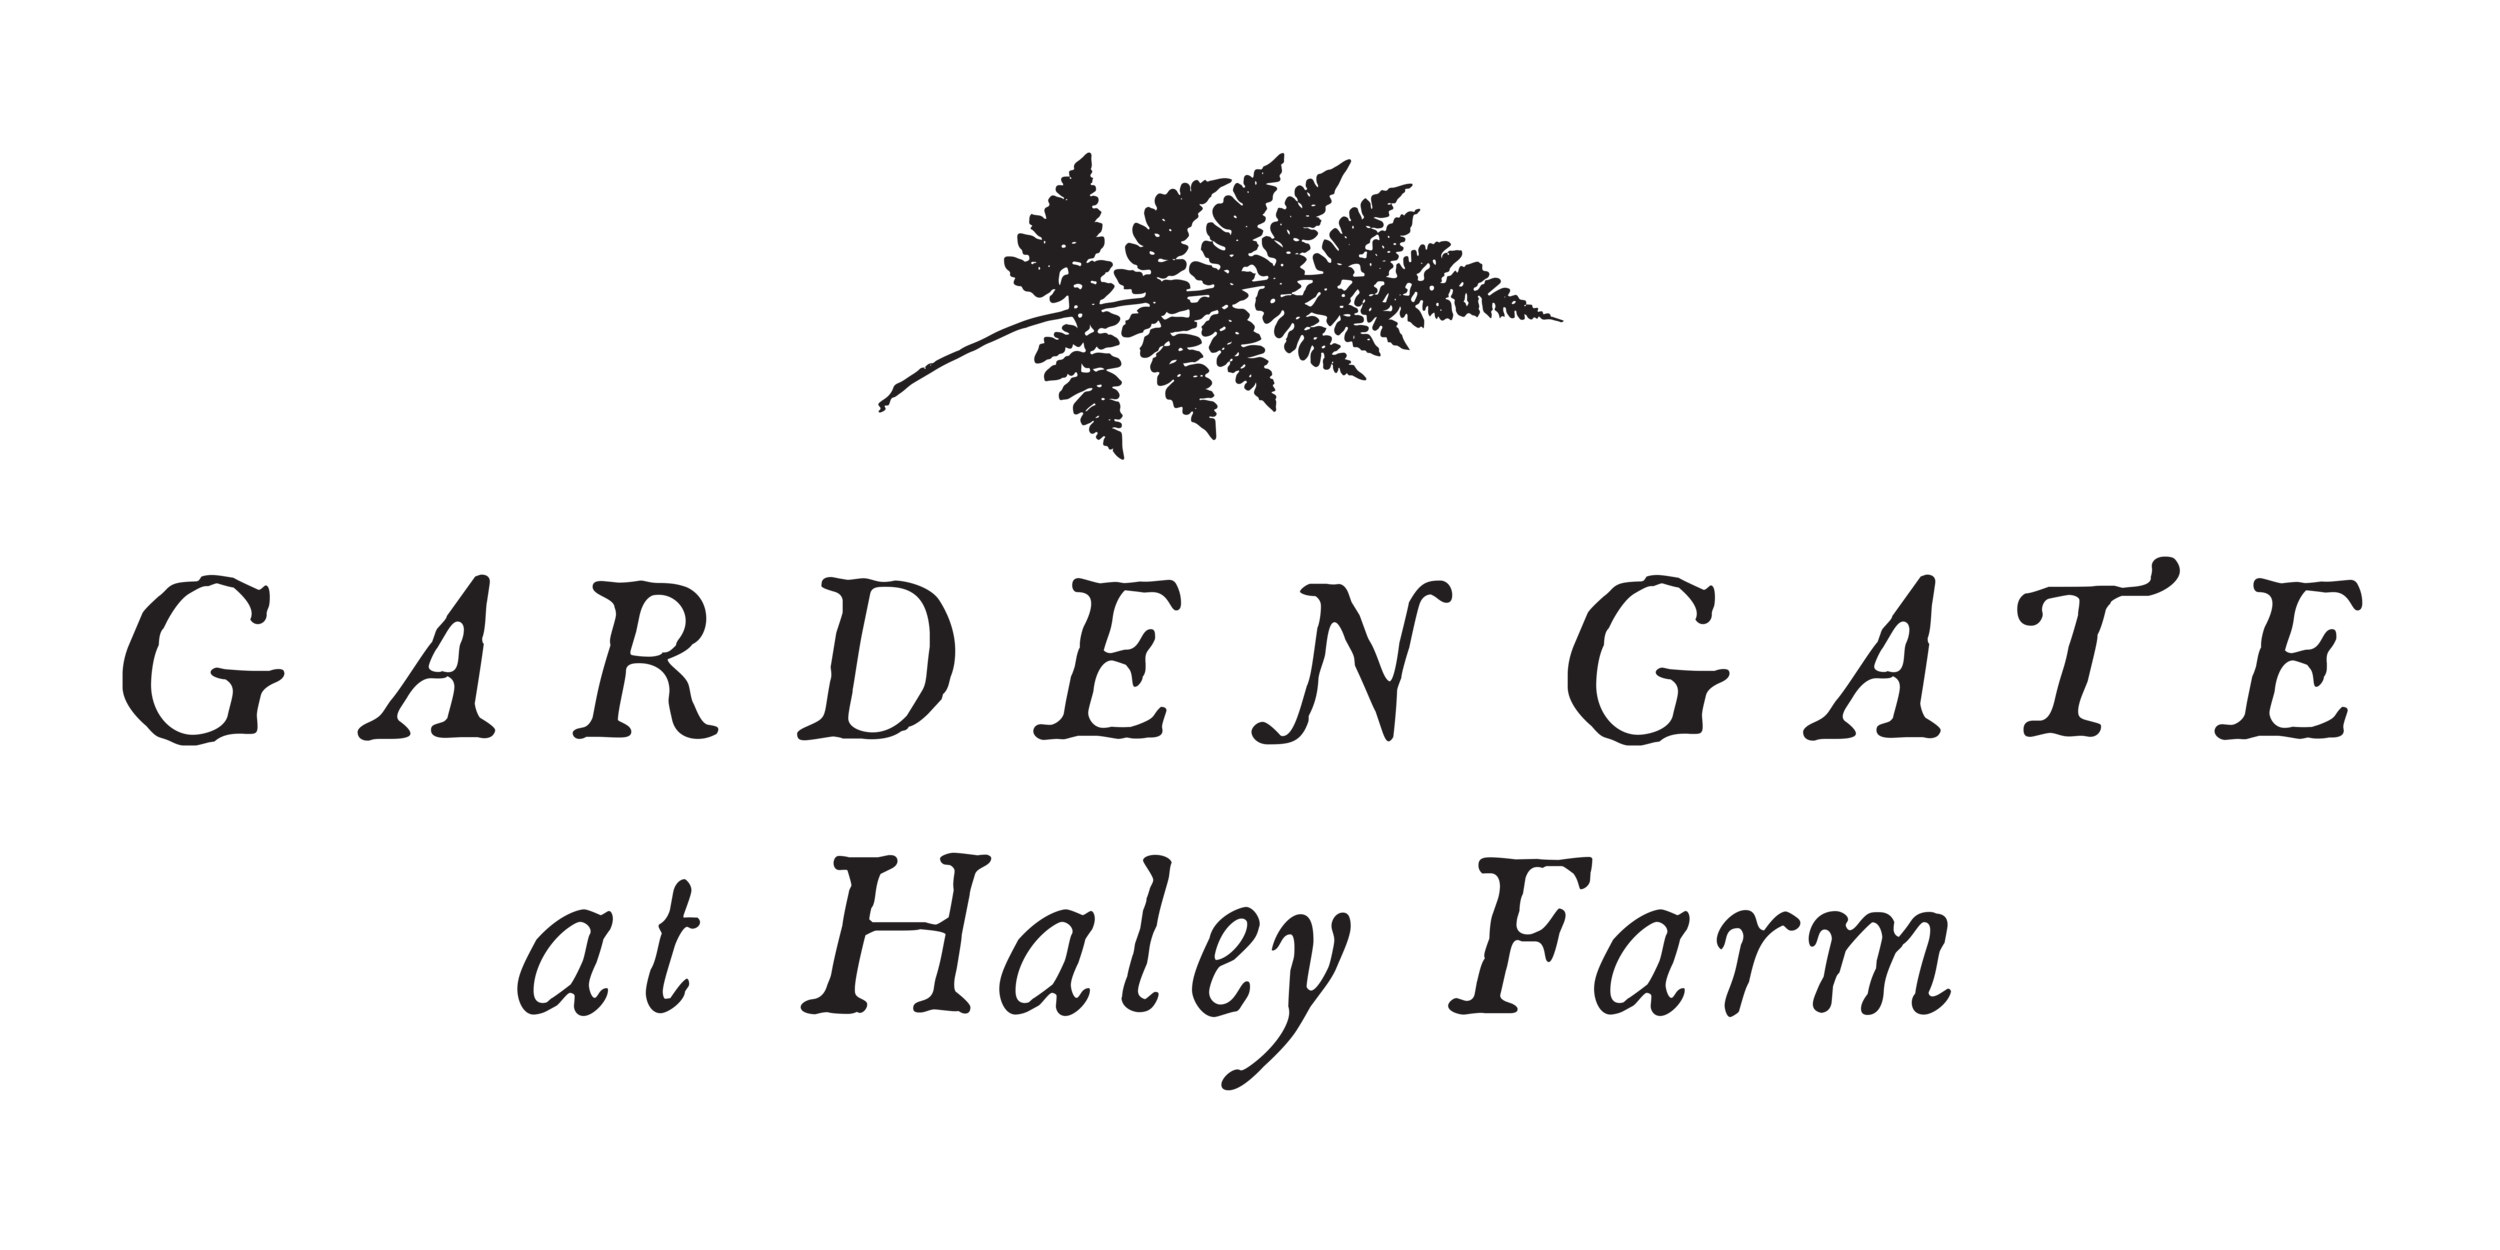 Garden Gate at Haley Farm